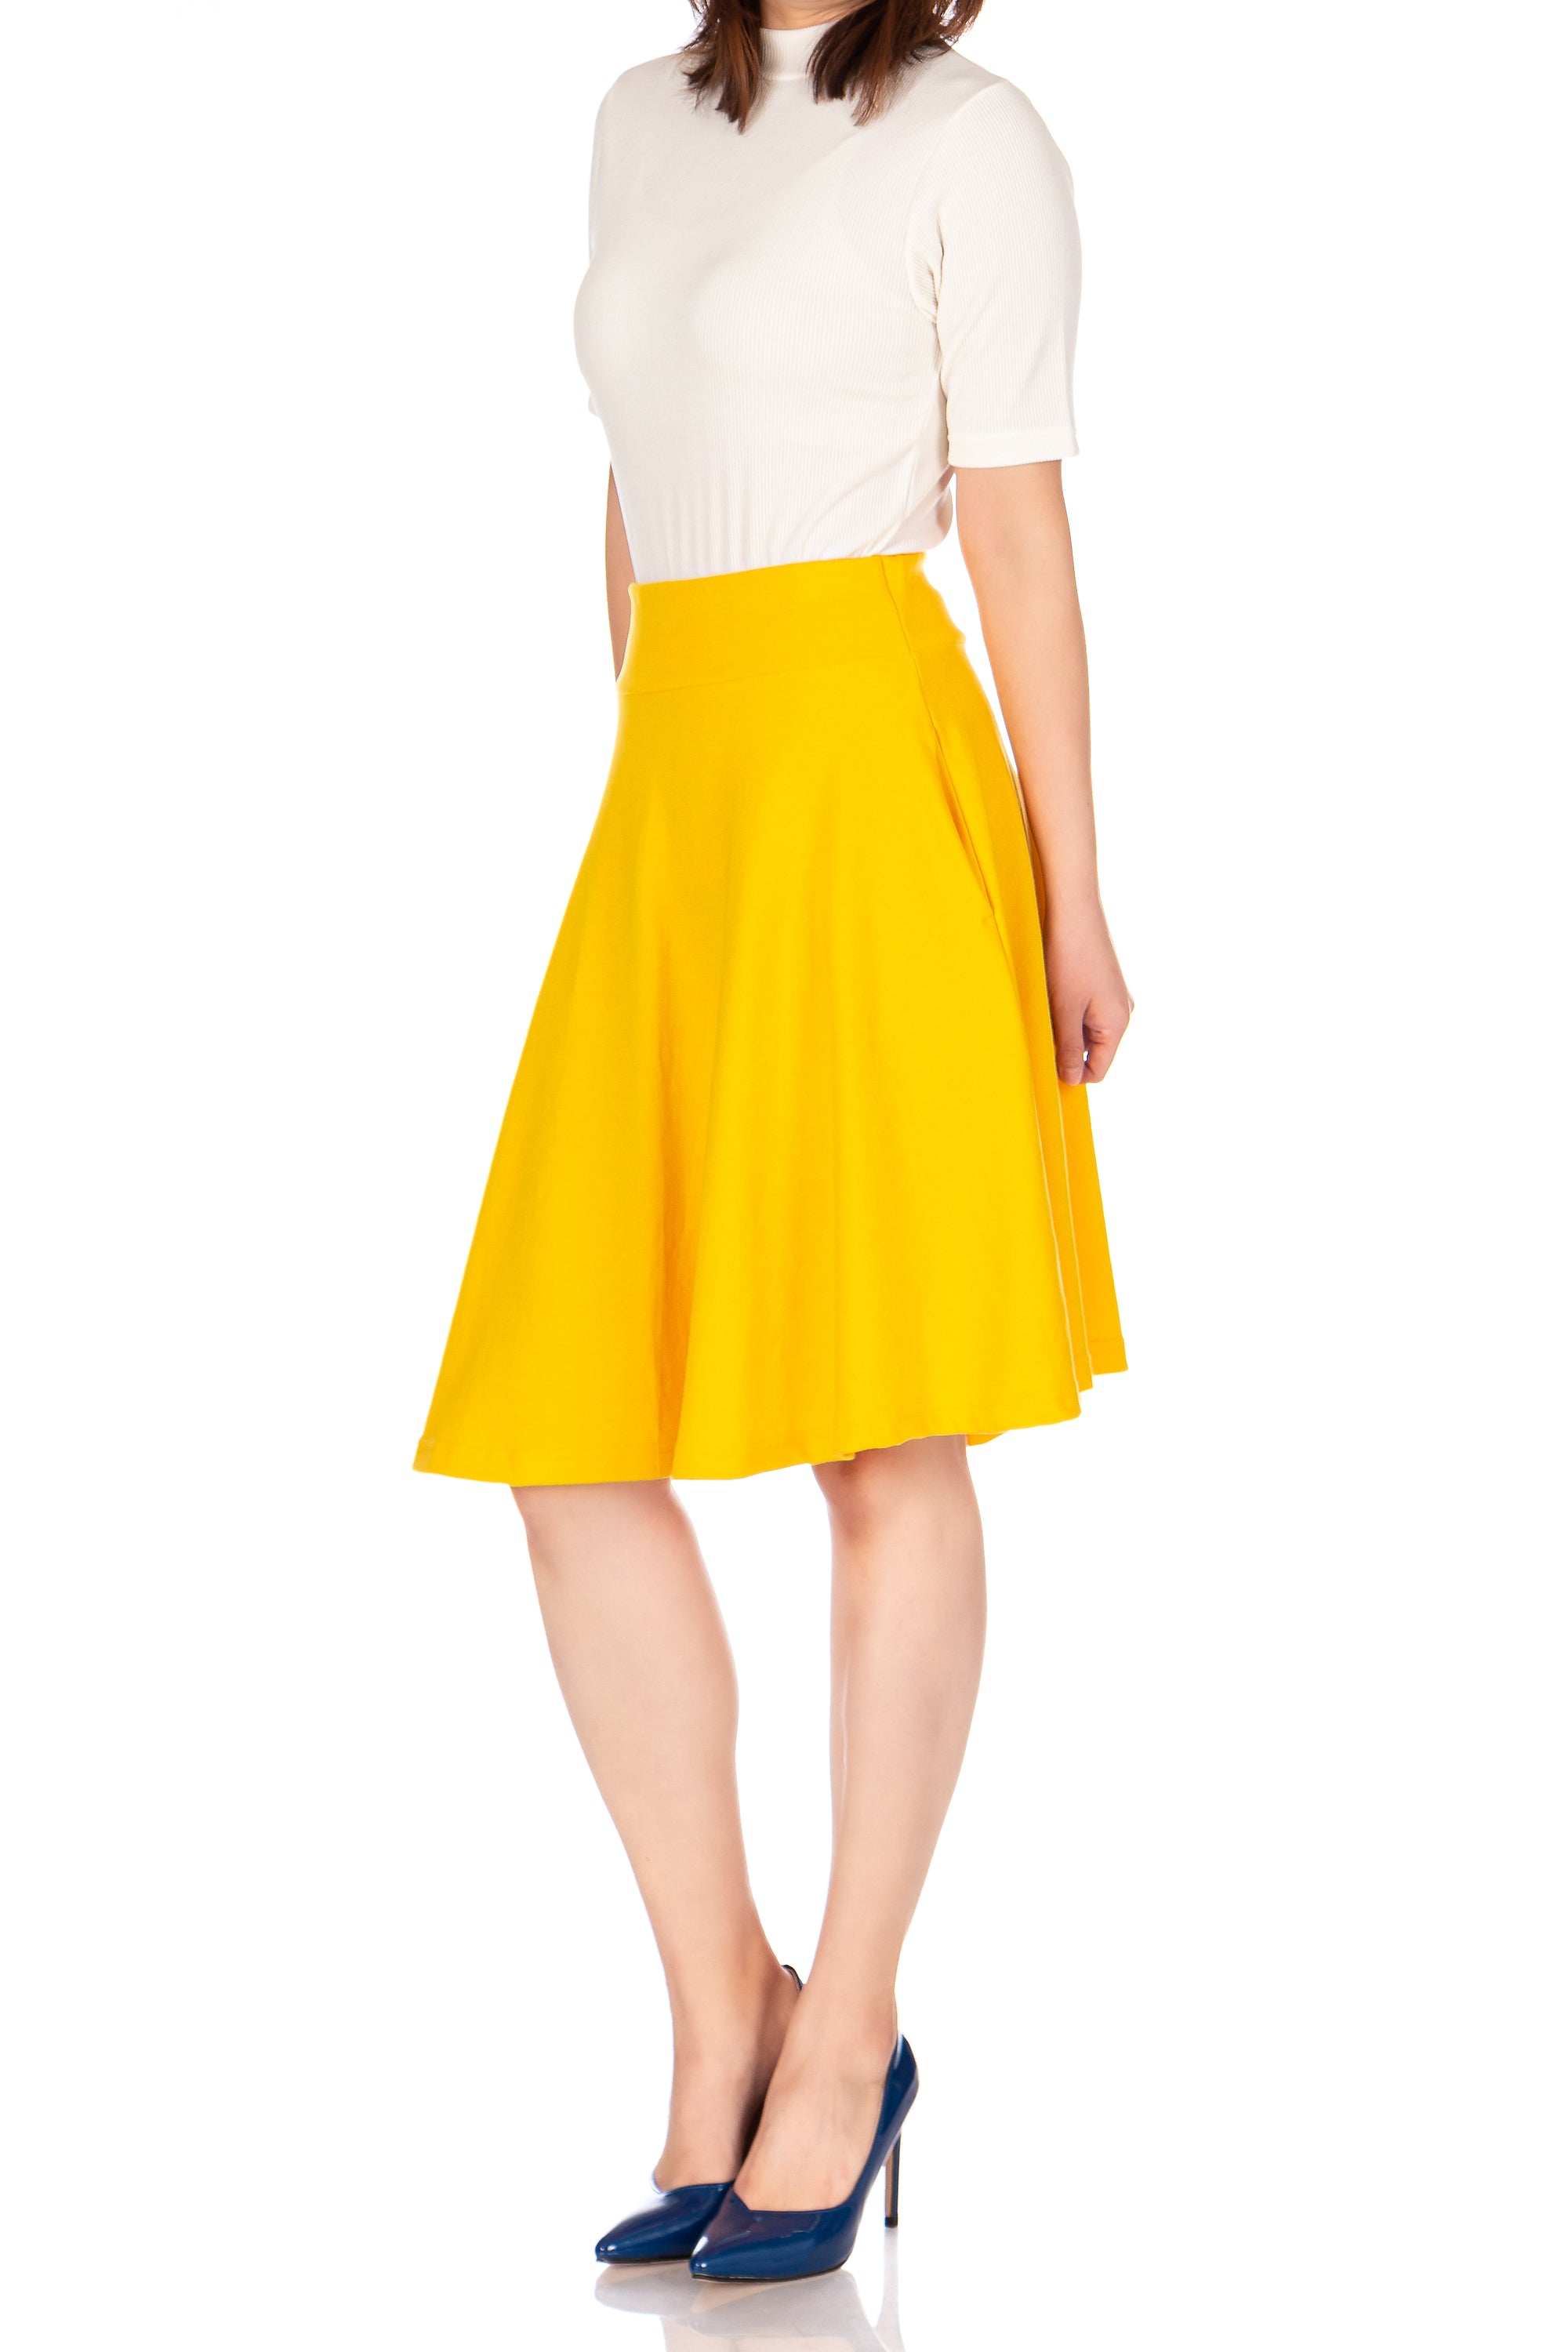 Tidy Women's Cotton Blend High Waist Aline Hidden Pockets Full Flared Circle Skater Knee Length Skirt_Yellow